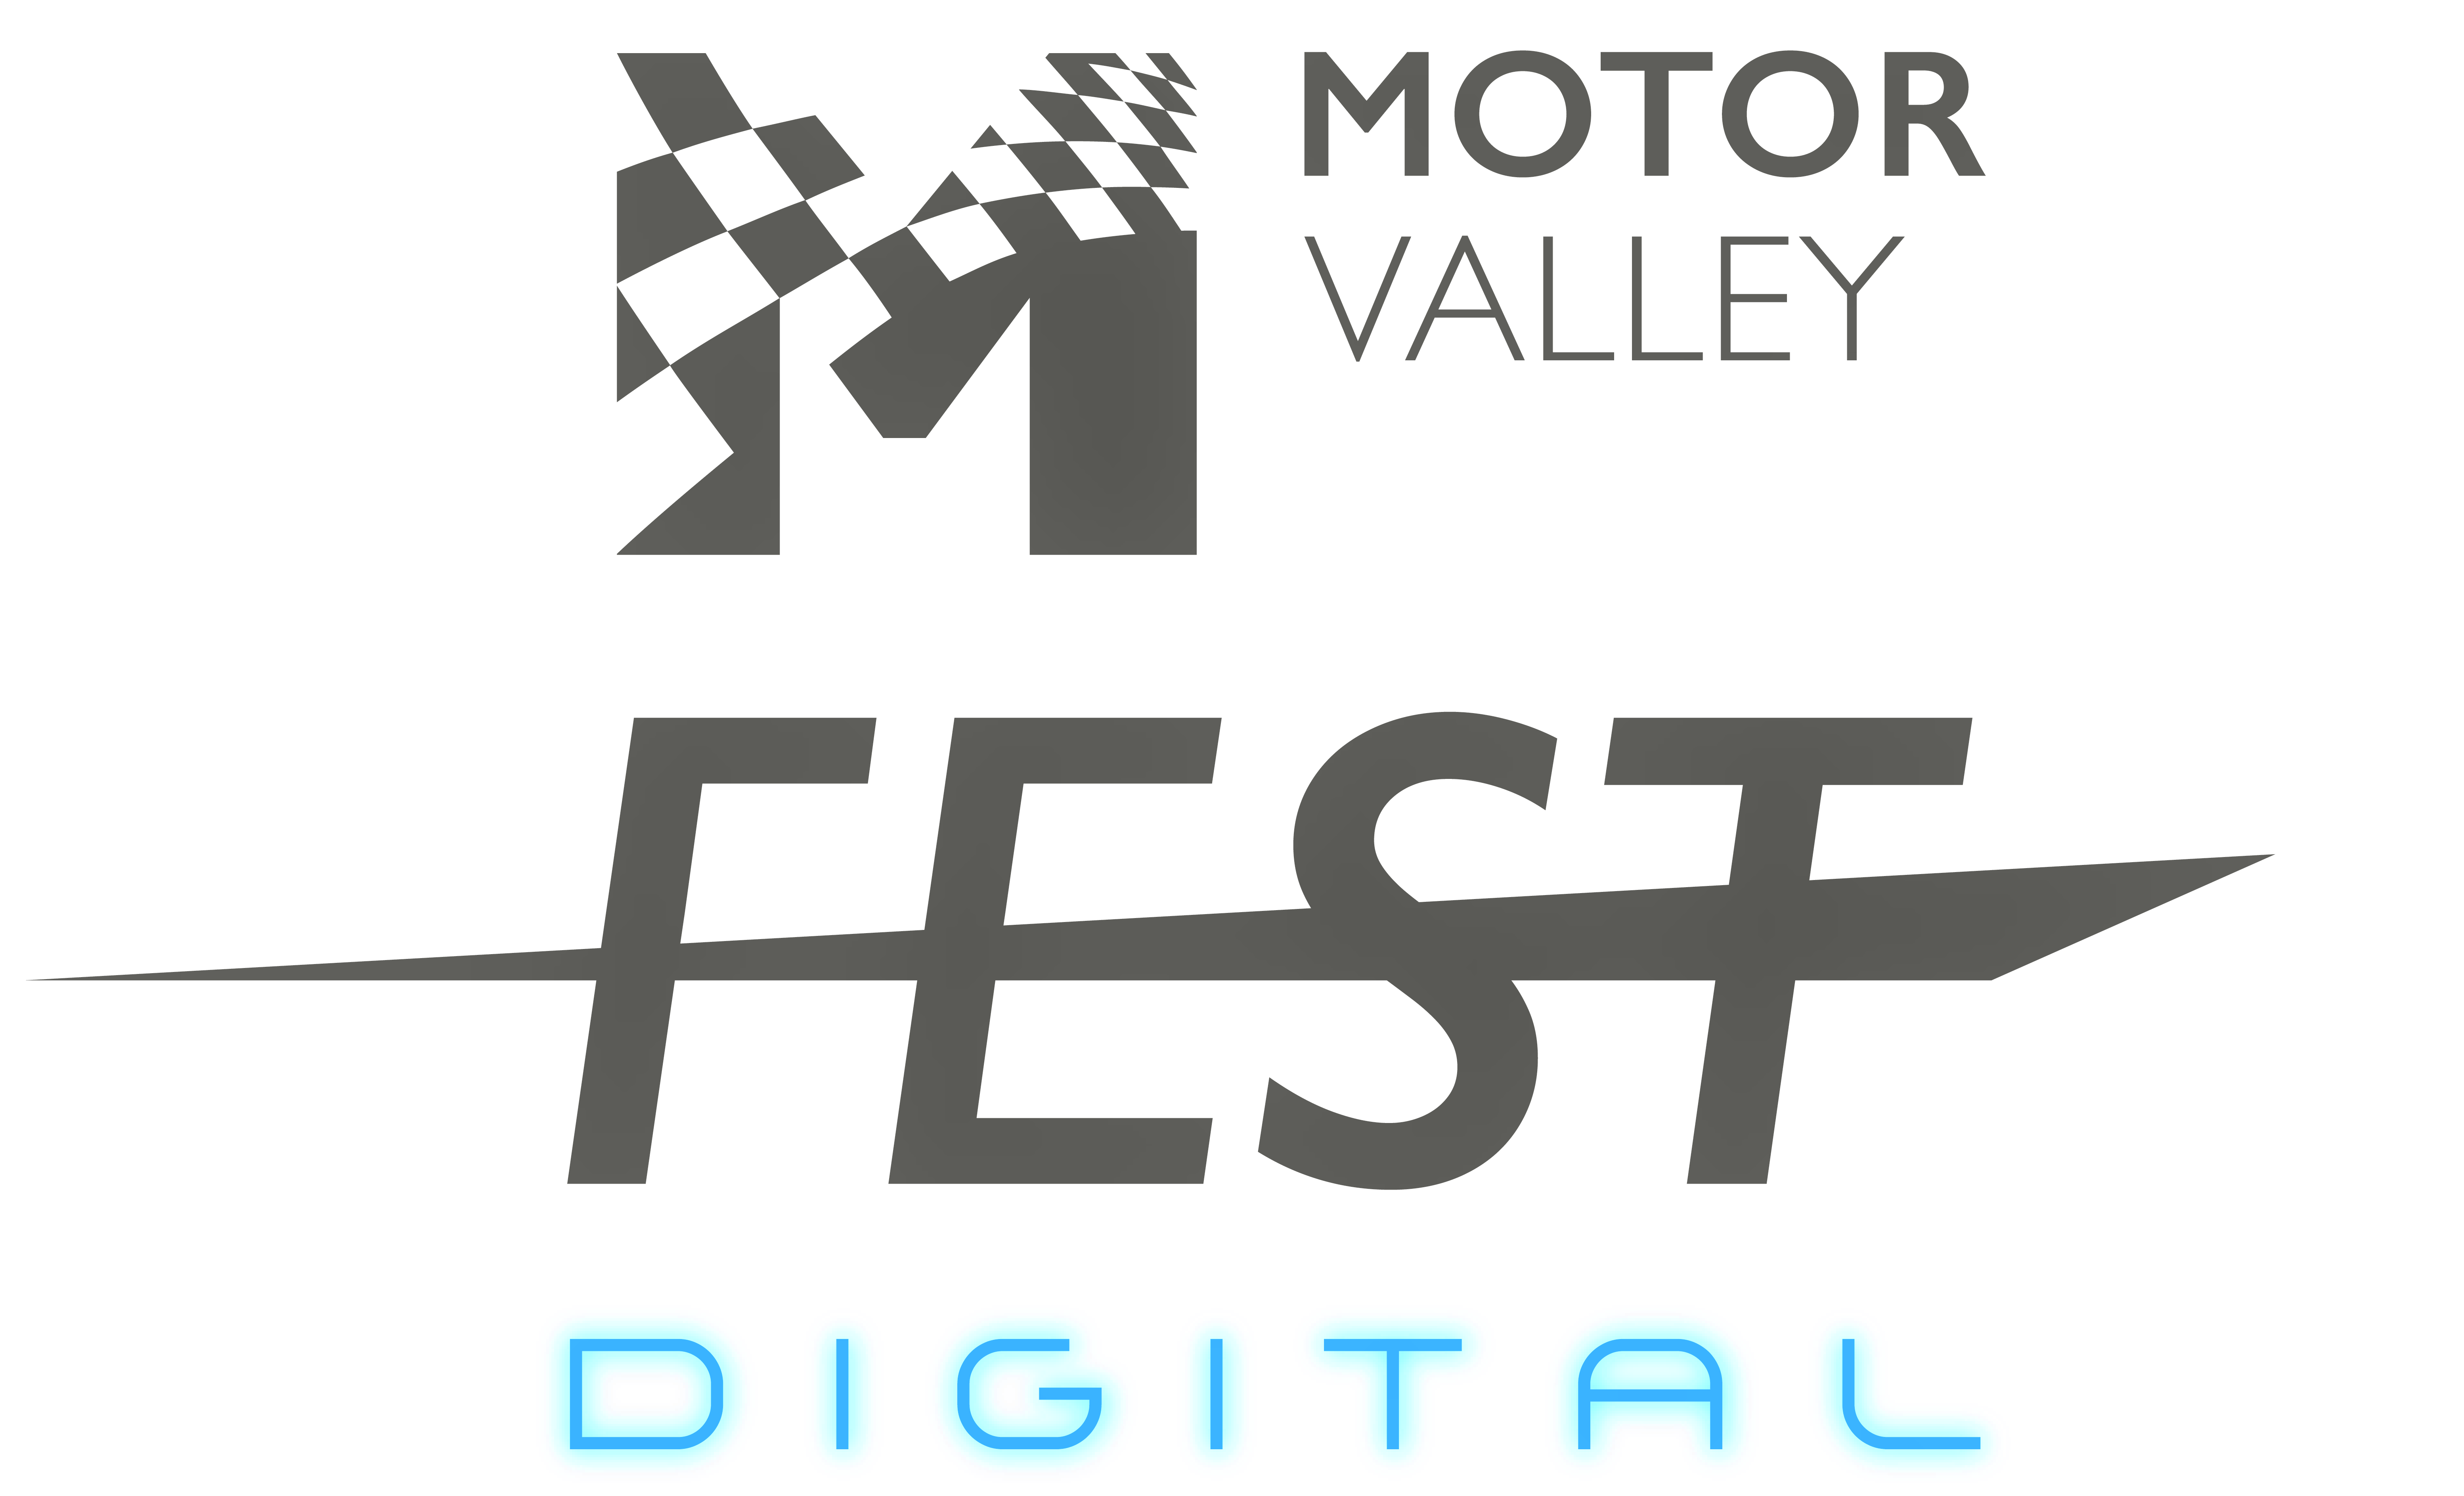 Motor Valley Fest Digital